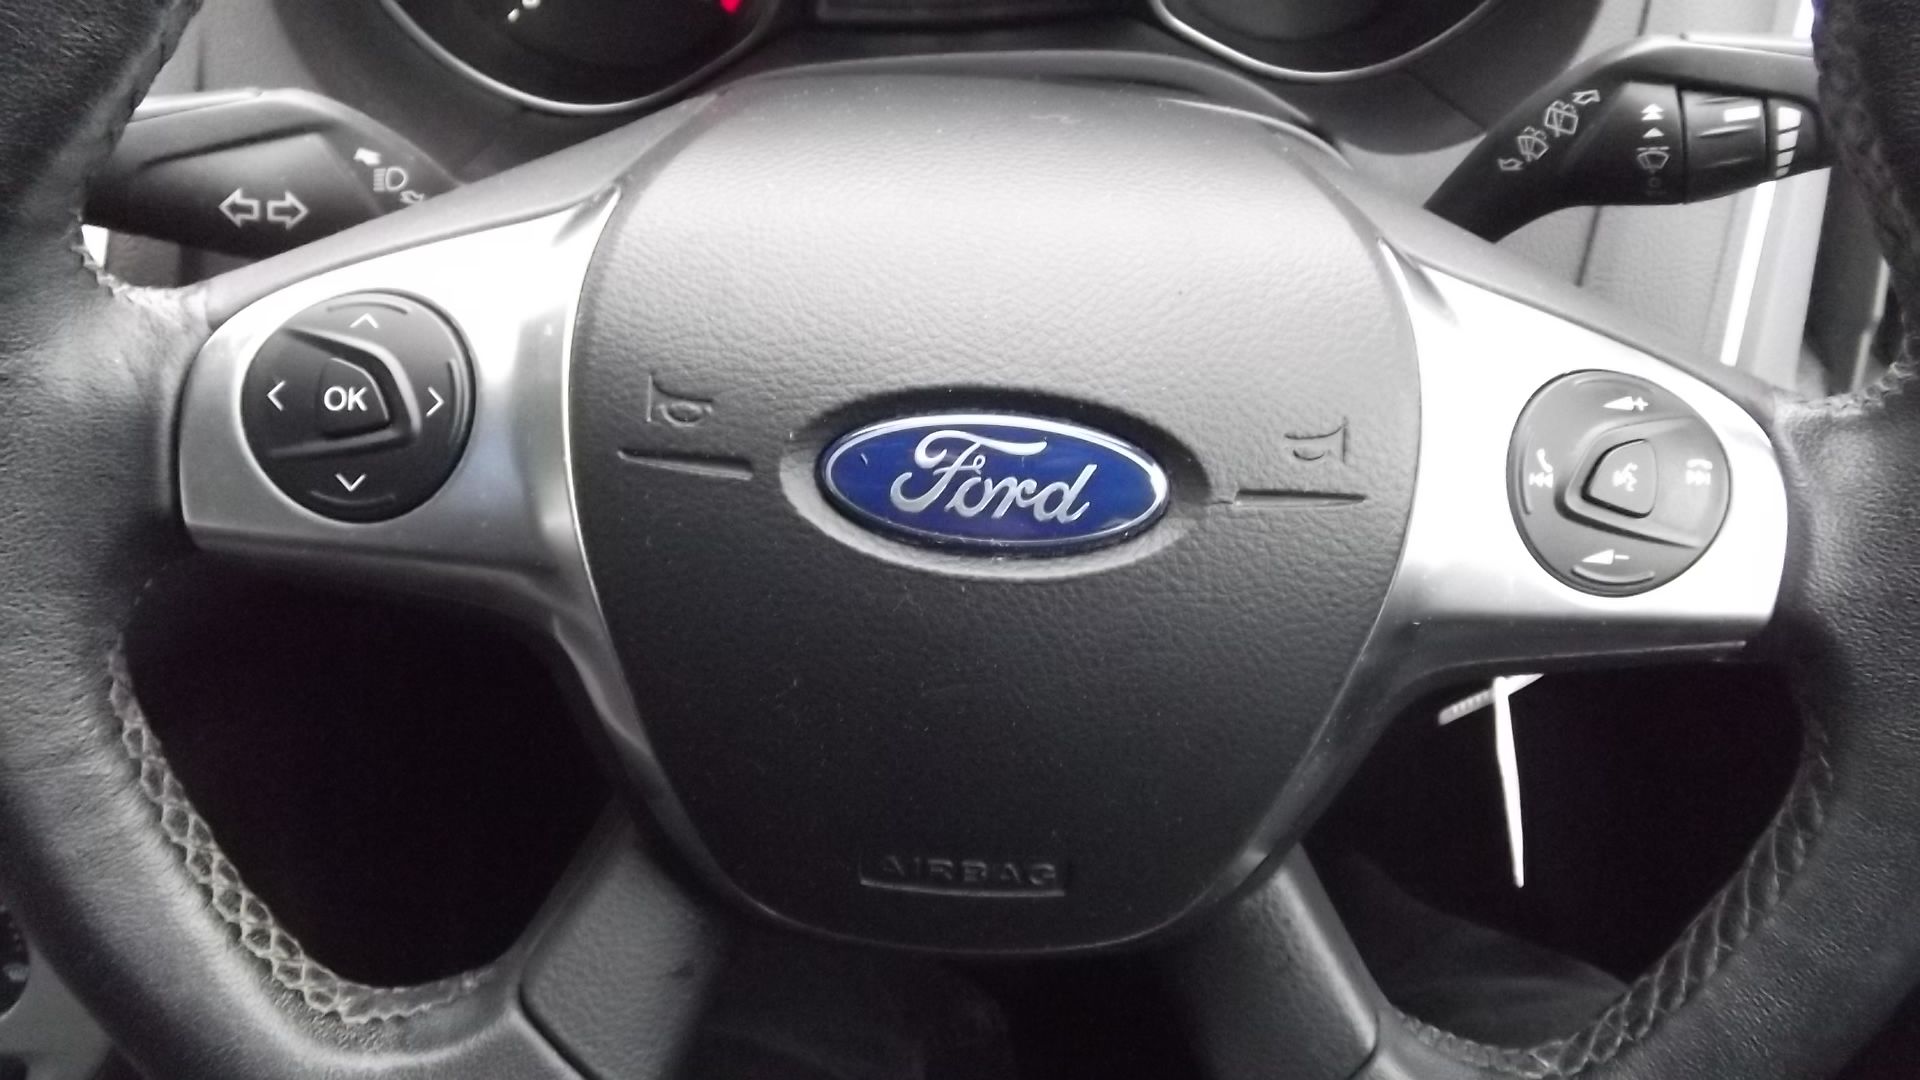 2013 Ford Focus 1.6 TDCi 115 Zetec 5dr Hatchback - Full Service History - CL505 - NO VAT ON THE HAMM - Image 6 of 21